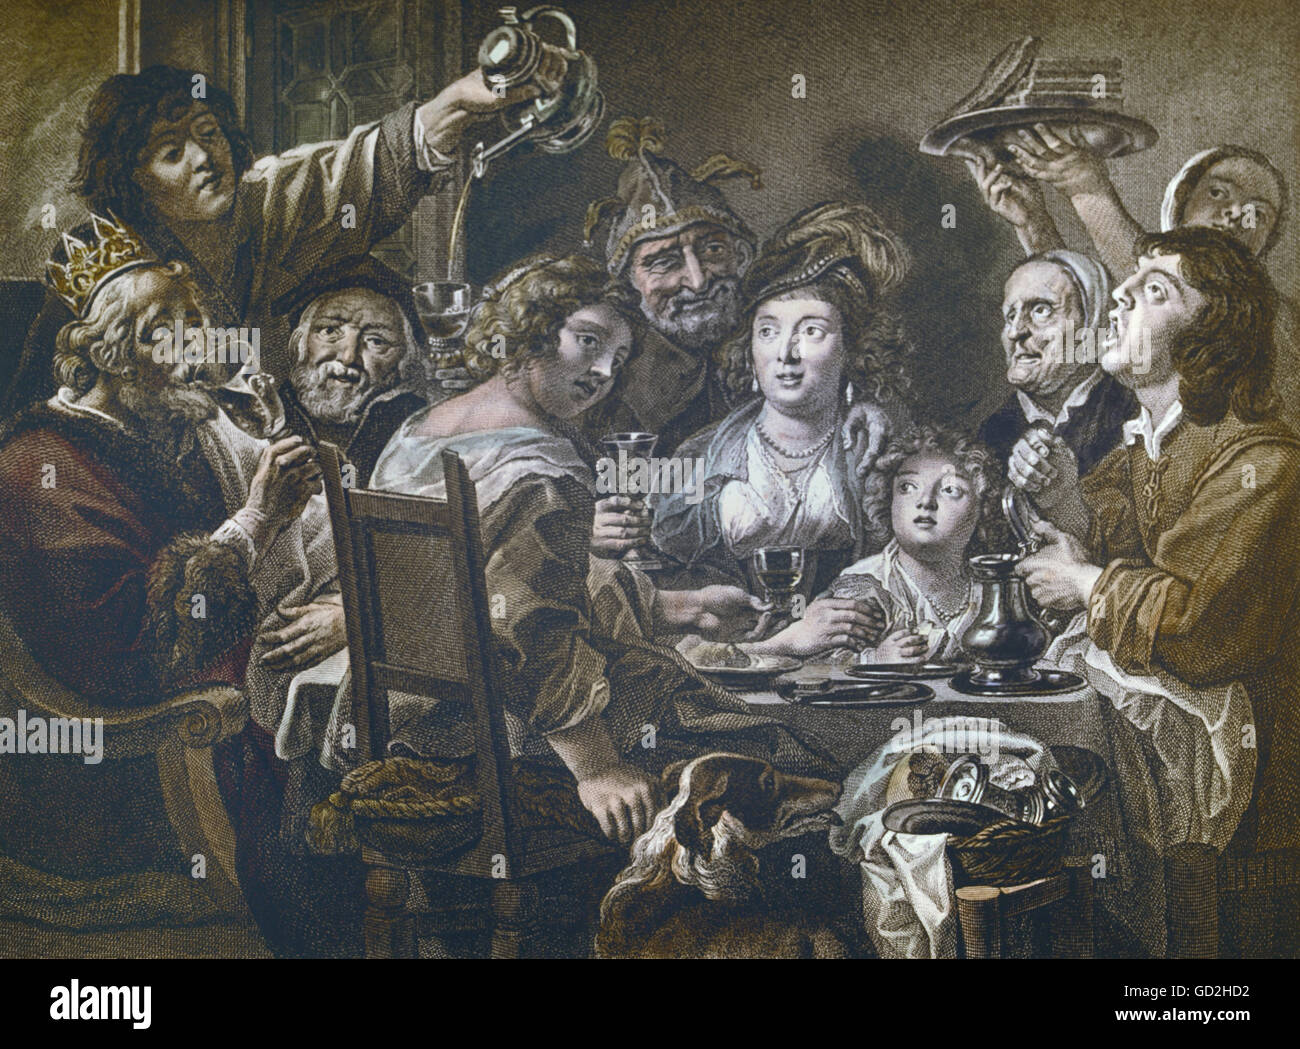 Alkohol, Trinkspree, 'der König trinkt', nach Gemälde von Jacob Jordaens (1593 - 1678), Farbstich von Ephraim Gottlieb Krüger (1756 - 1834), 26,5 x 3,5 cm, Dresden, um 1810, Zusatzrechte-Clearenzen-nicht vorhanden Stockfoto